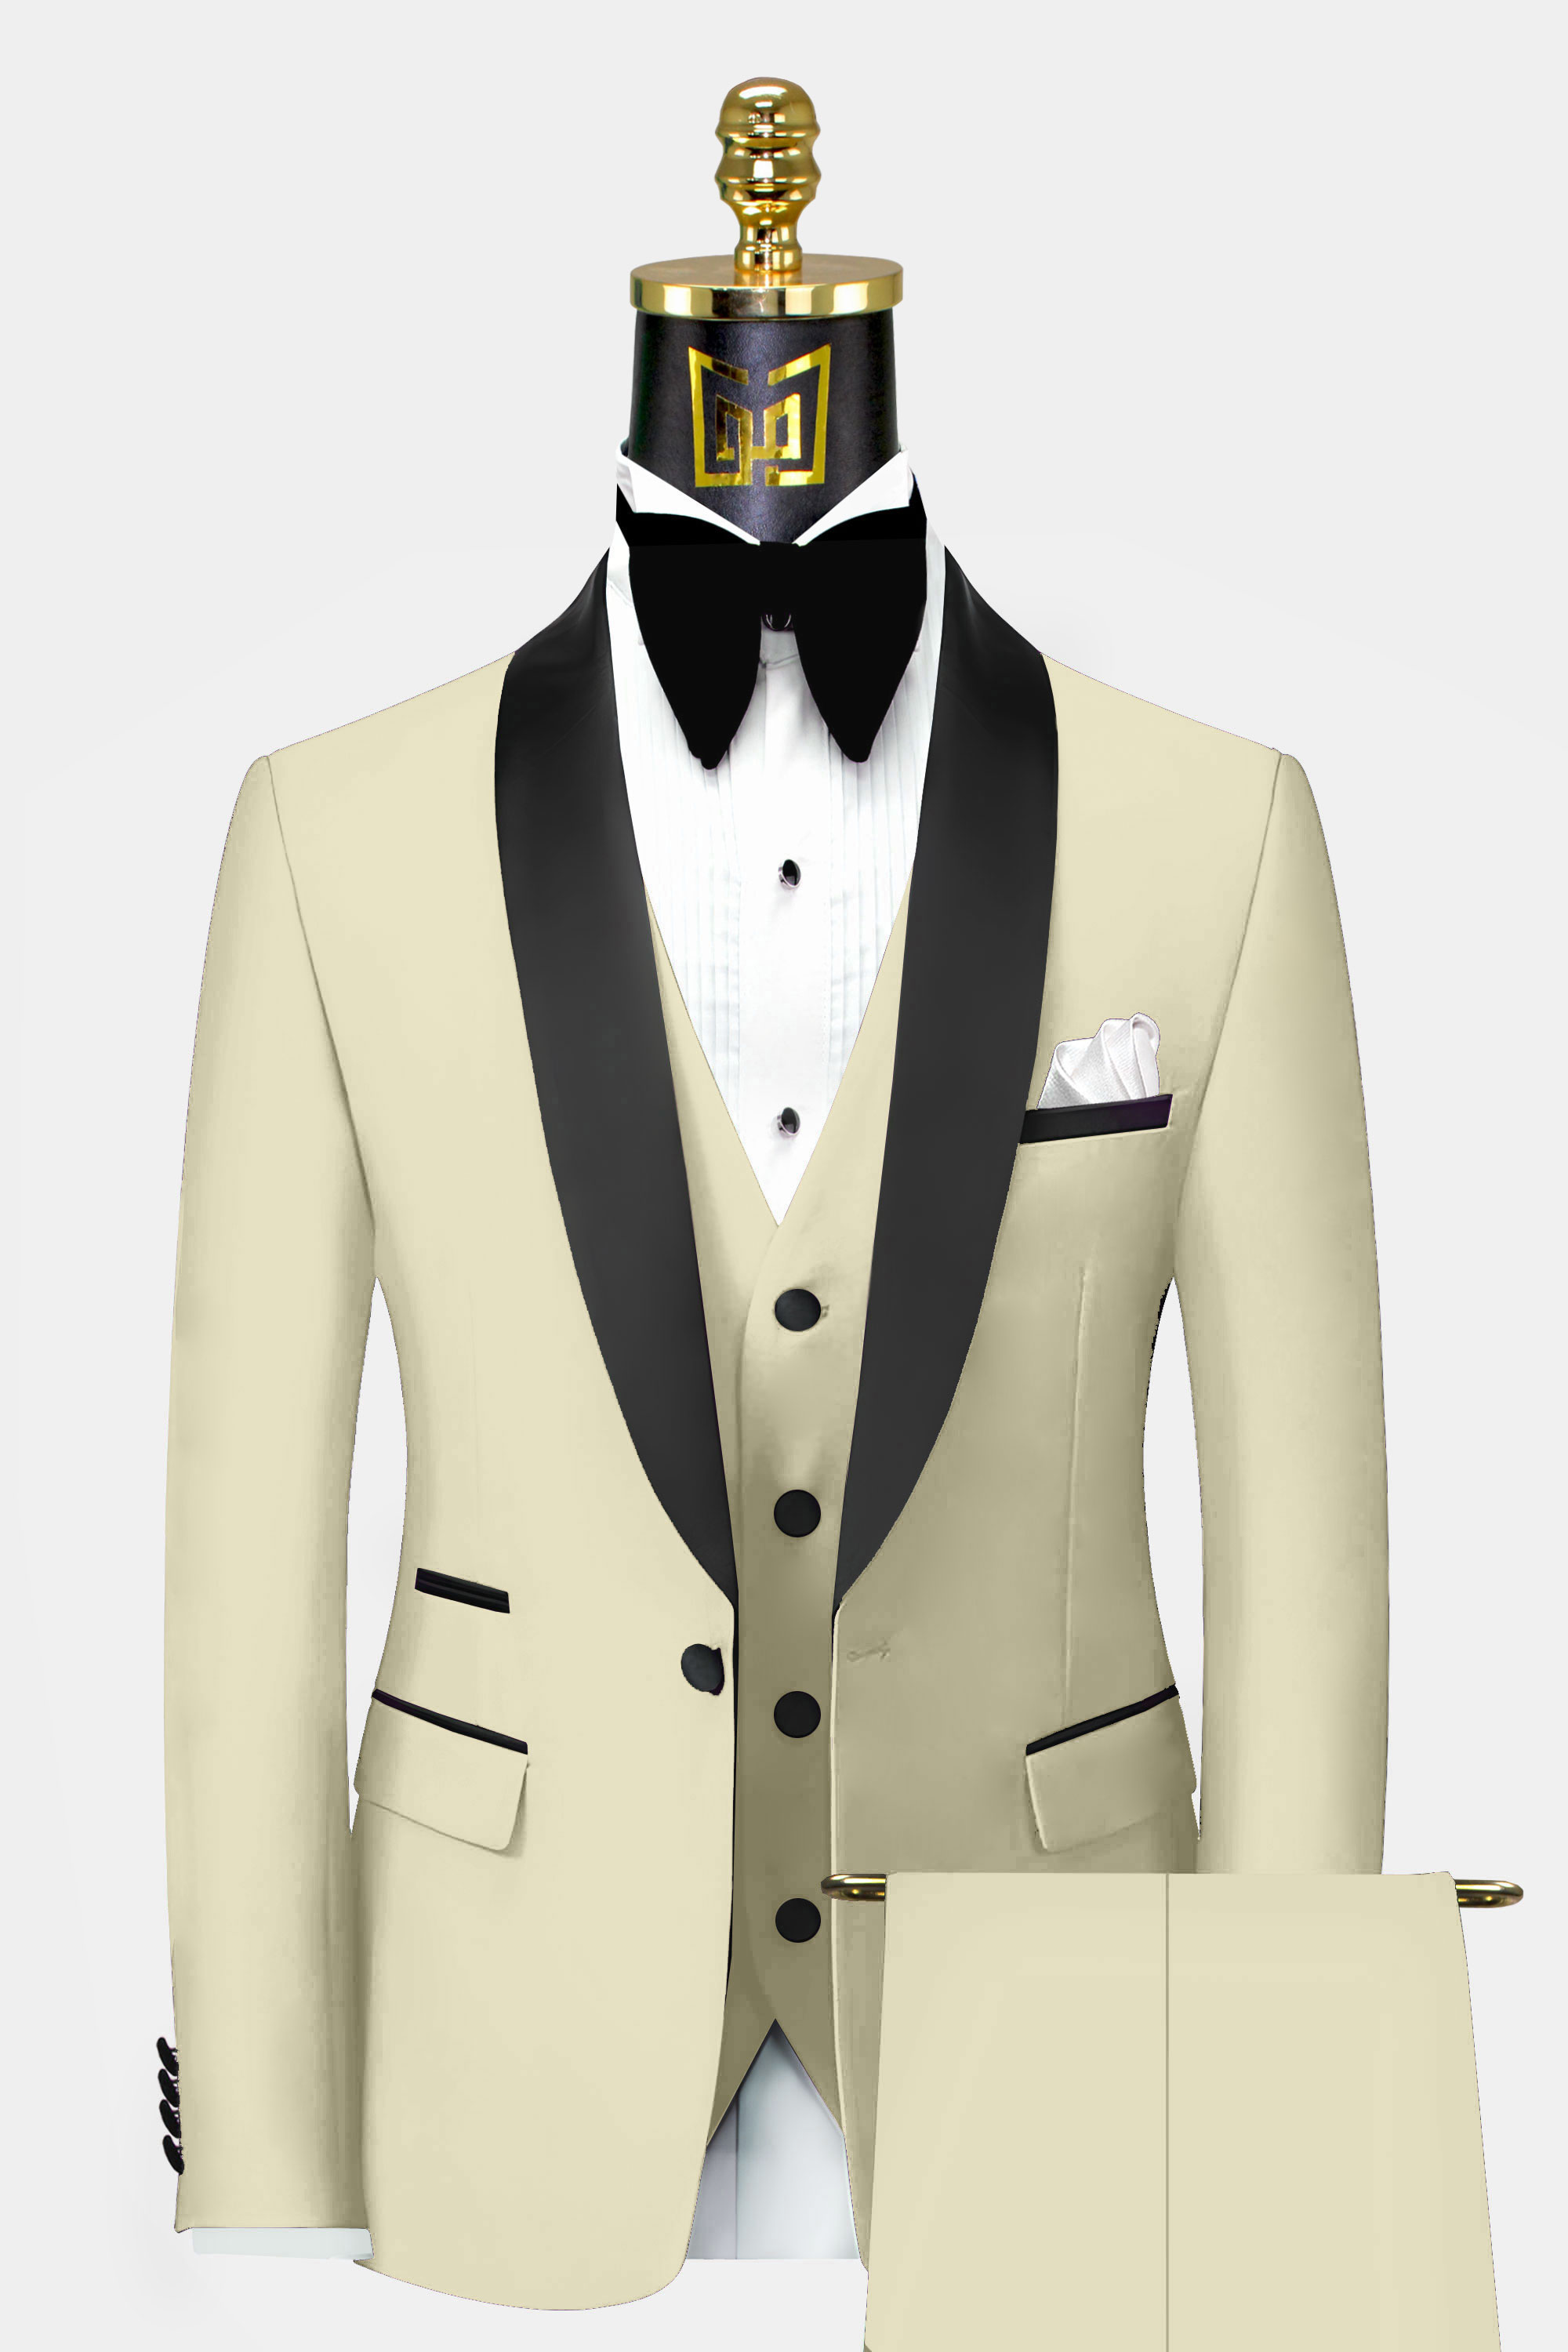 Mens-Champagne-Tuxedo-Suit-Wedding-Groom-Prom-Suit-from-Gentlemansguru.com